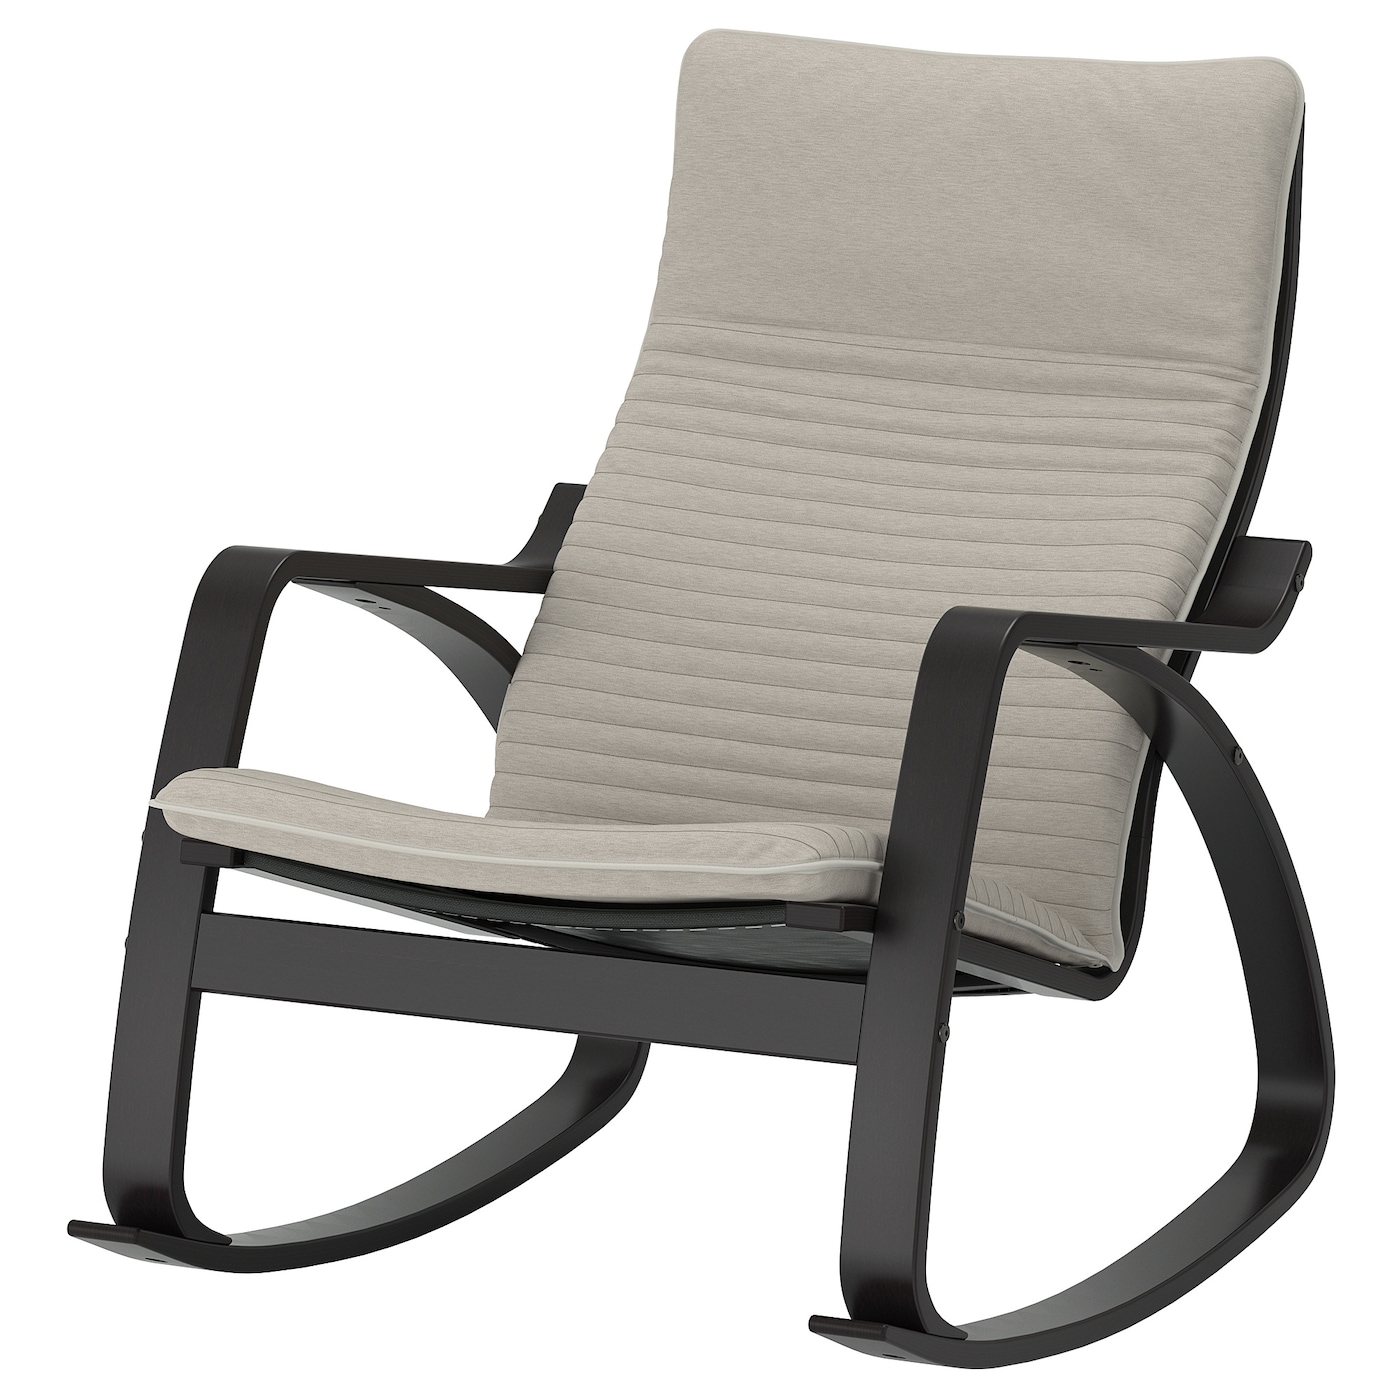 ПОЭНГ Кресло-качалка, черно-коричневый/Книса светло-бежевый POÄNG IKEA кресло качалка сантьяго каркас коричневый сиденье коричневое 140 х 58 х 105 см